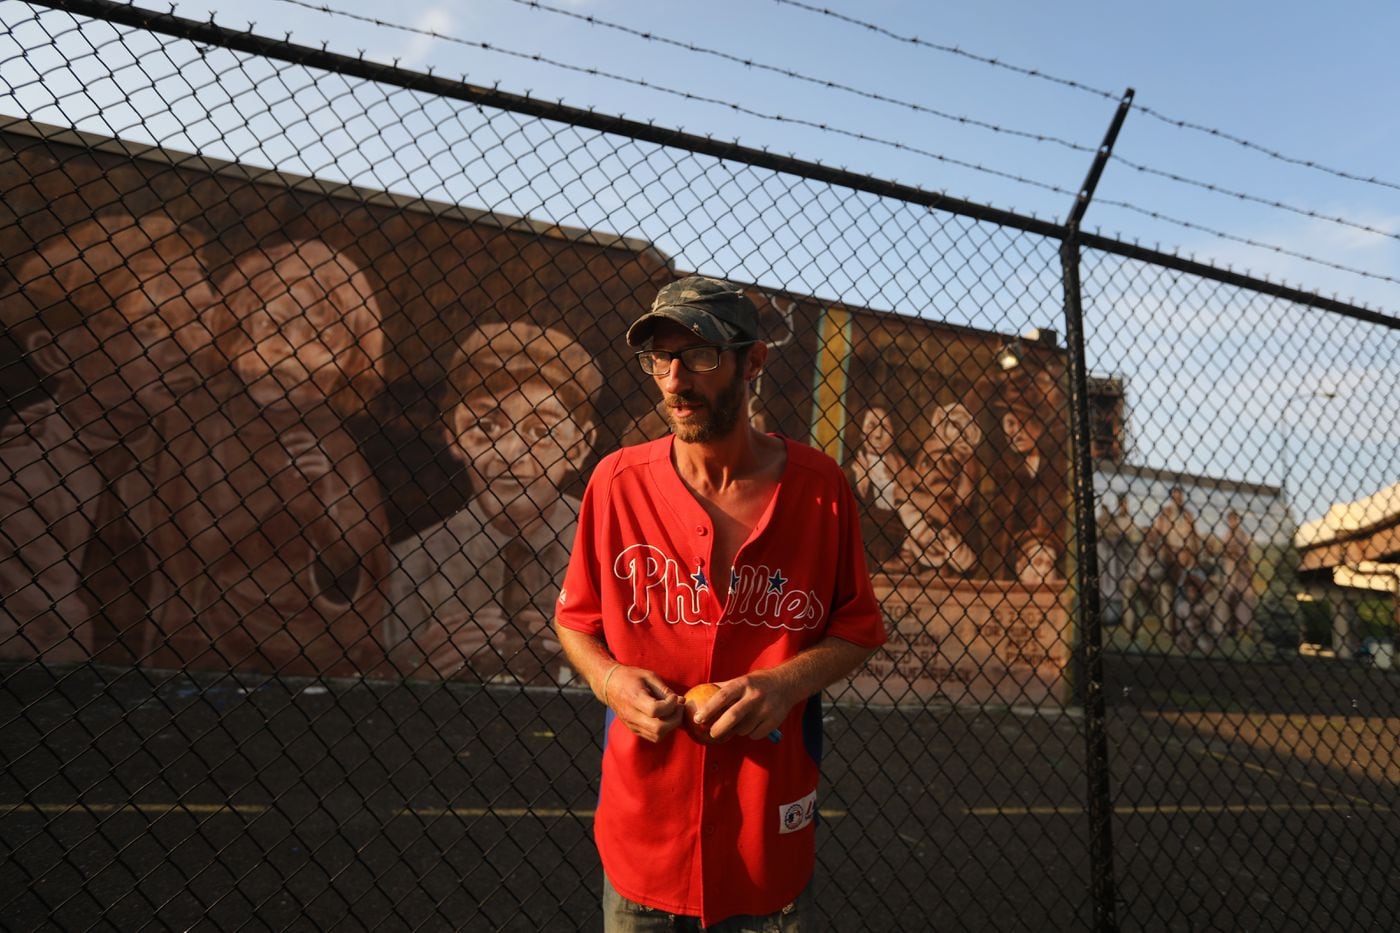 Johnny Bobbitt returned to Philadelphia, homeless and broke despite the generosity of donors.